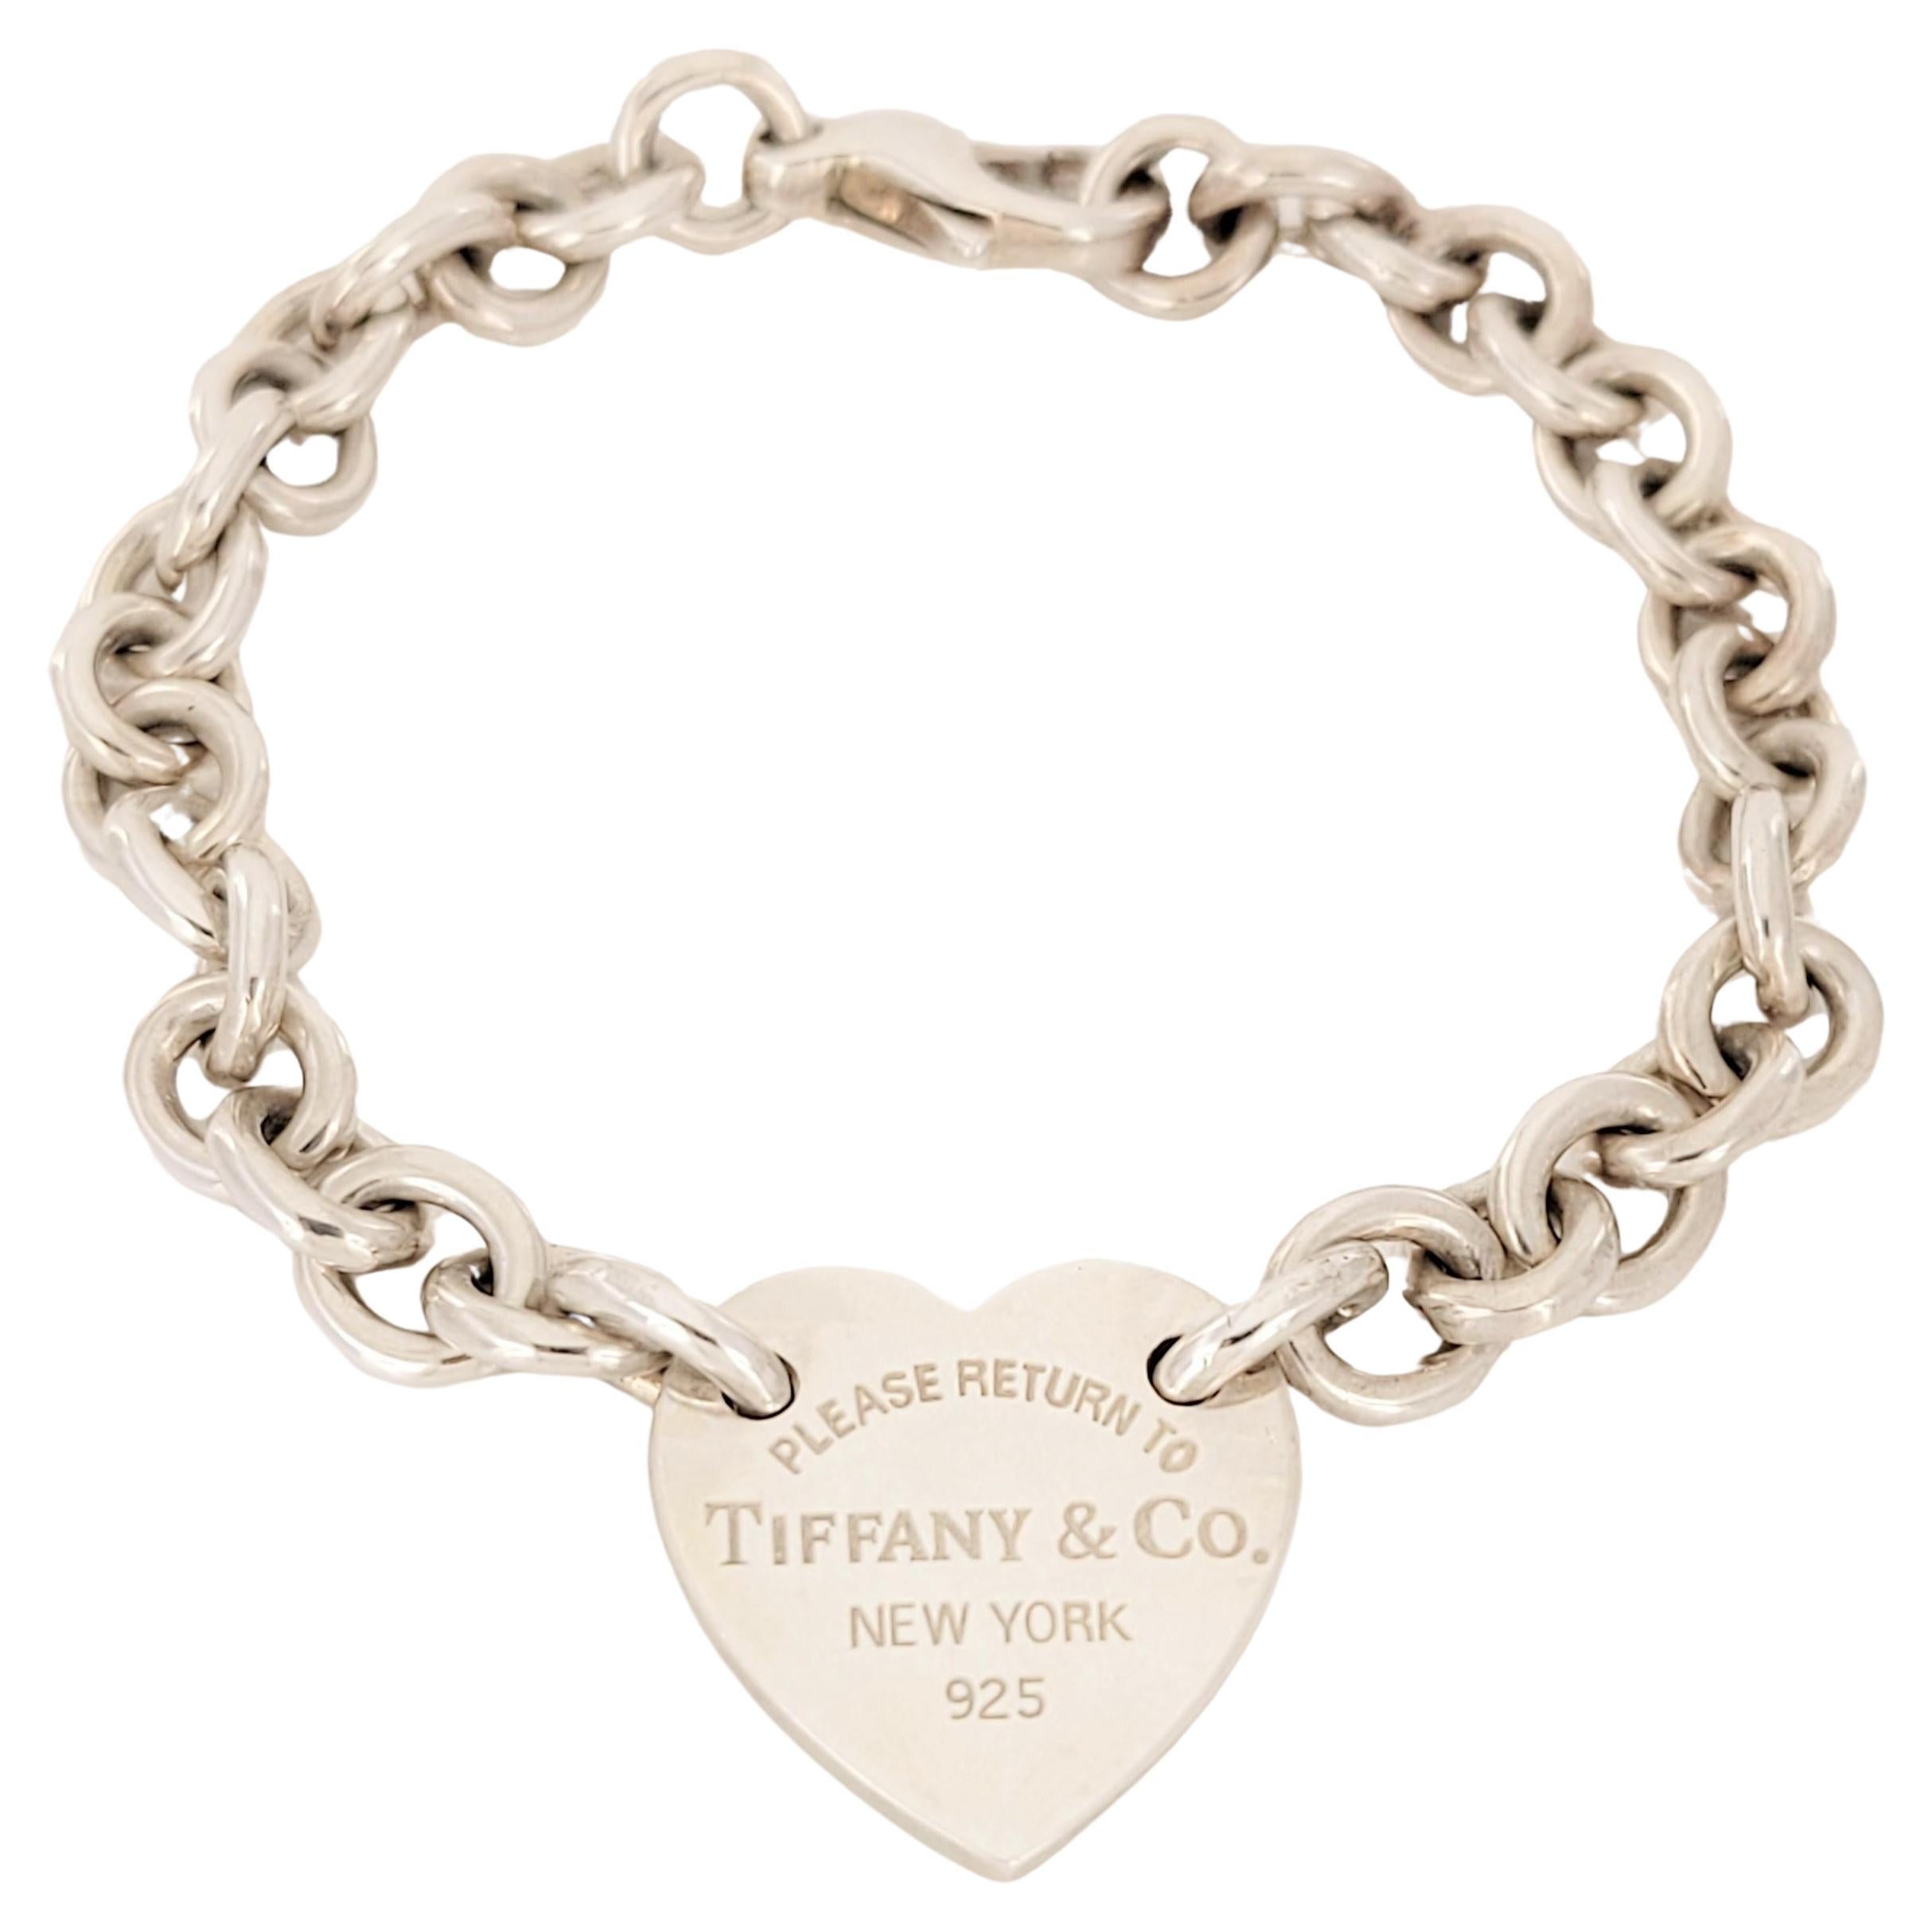 Retour à la marque Tiffany & co 
Matière Argent Sterling925
Longueur du bracelet 7.5'' Long
Poids du bracelet 27.4 gr total 
Prix de détail 575 
Livré avec une pochette Tiffany &co